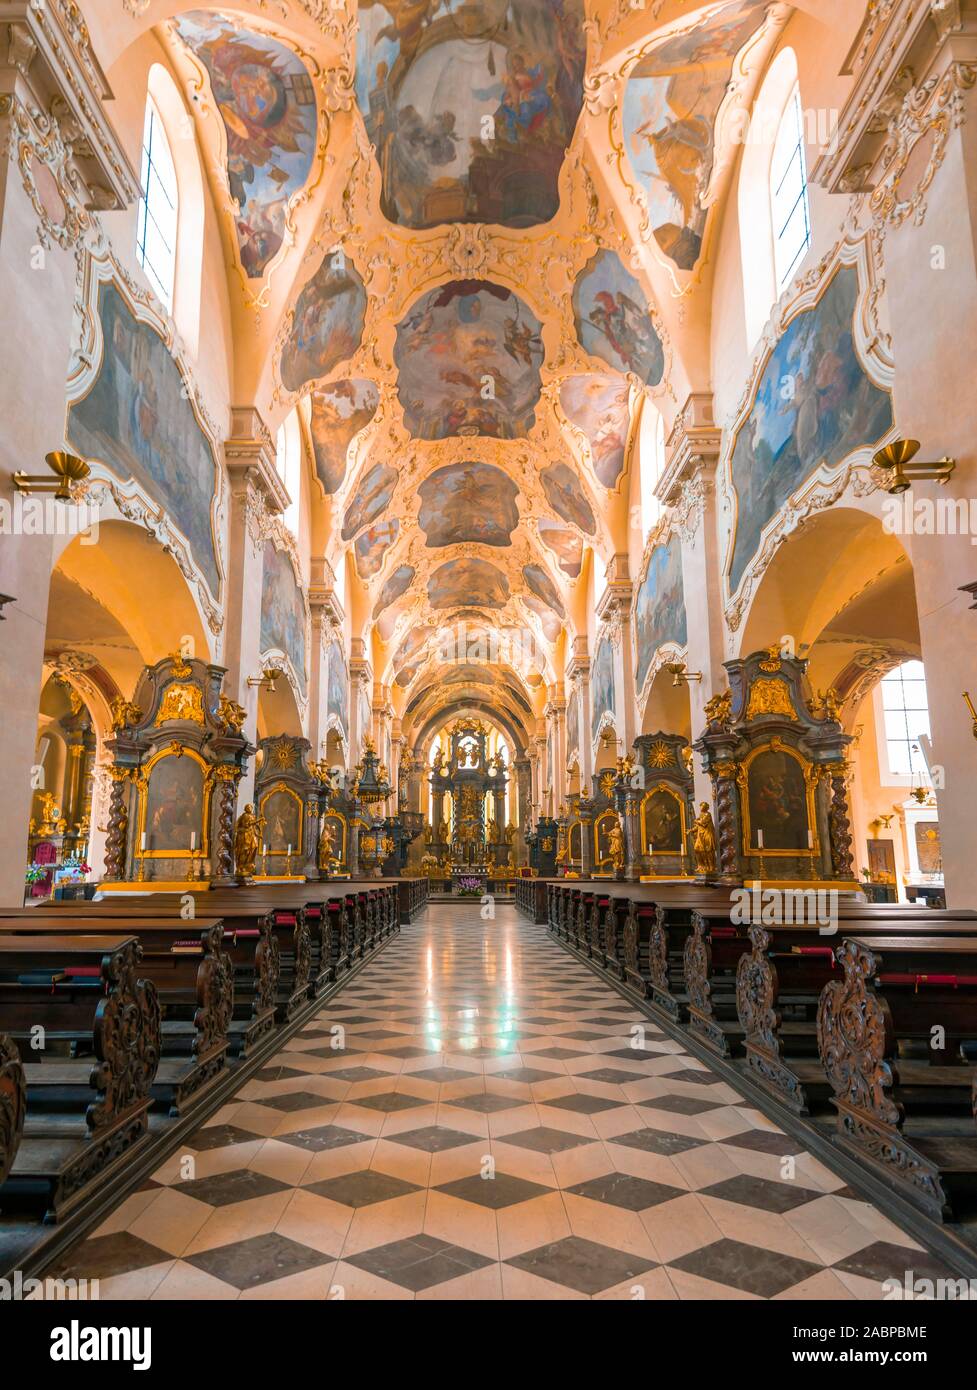 Church nave, monastery church of the Assumption of the Virgin Mary, Bazilika Nanebevzeti Panny Marie na Strahove, interior view, monastery Strahov Stock Photo